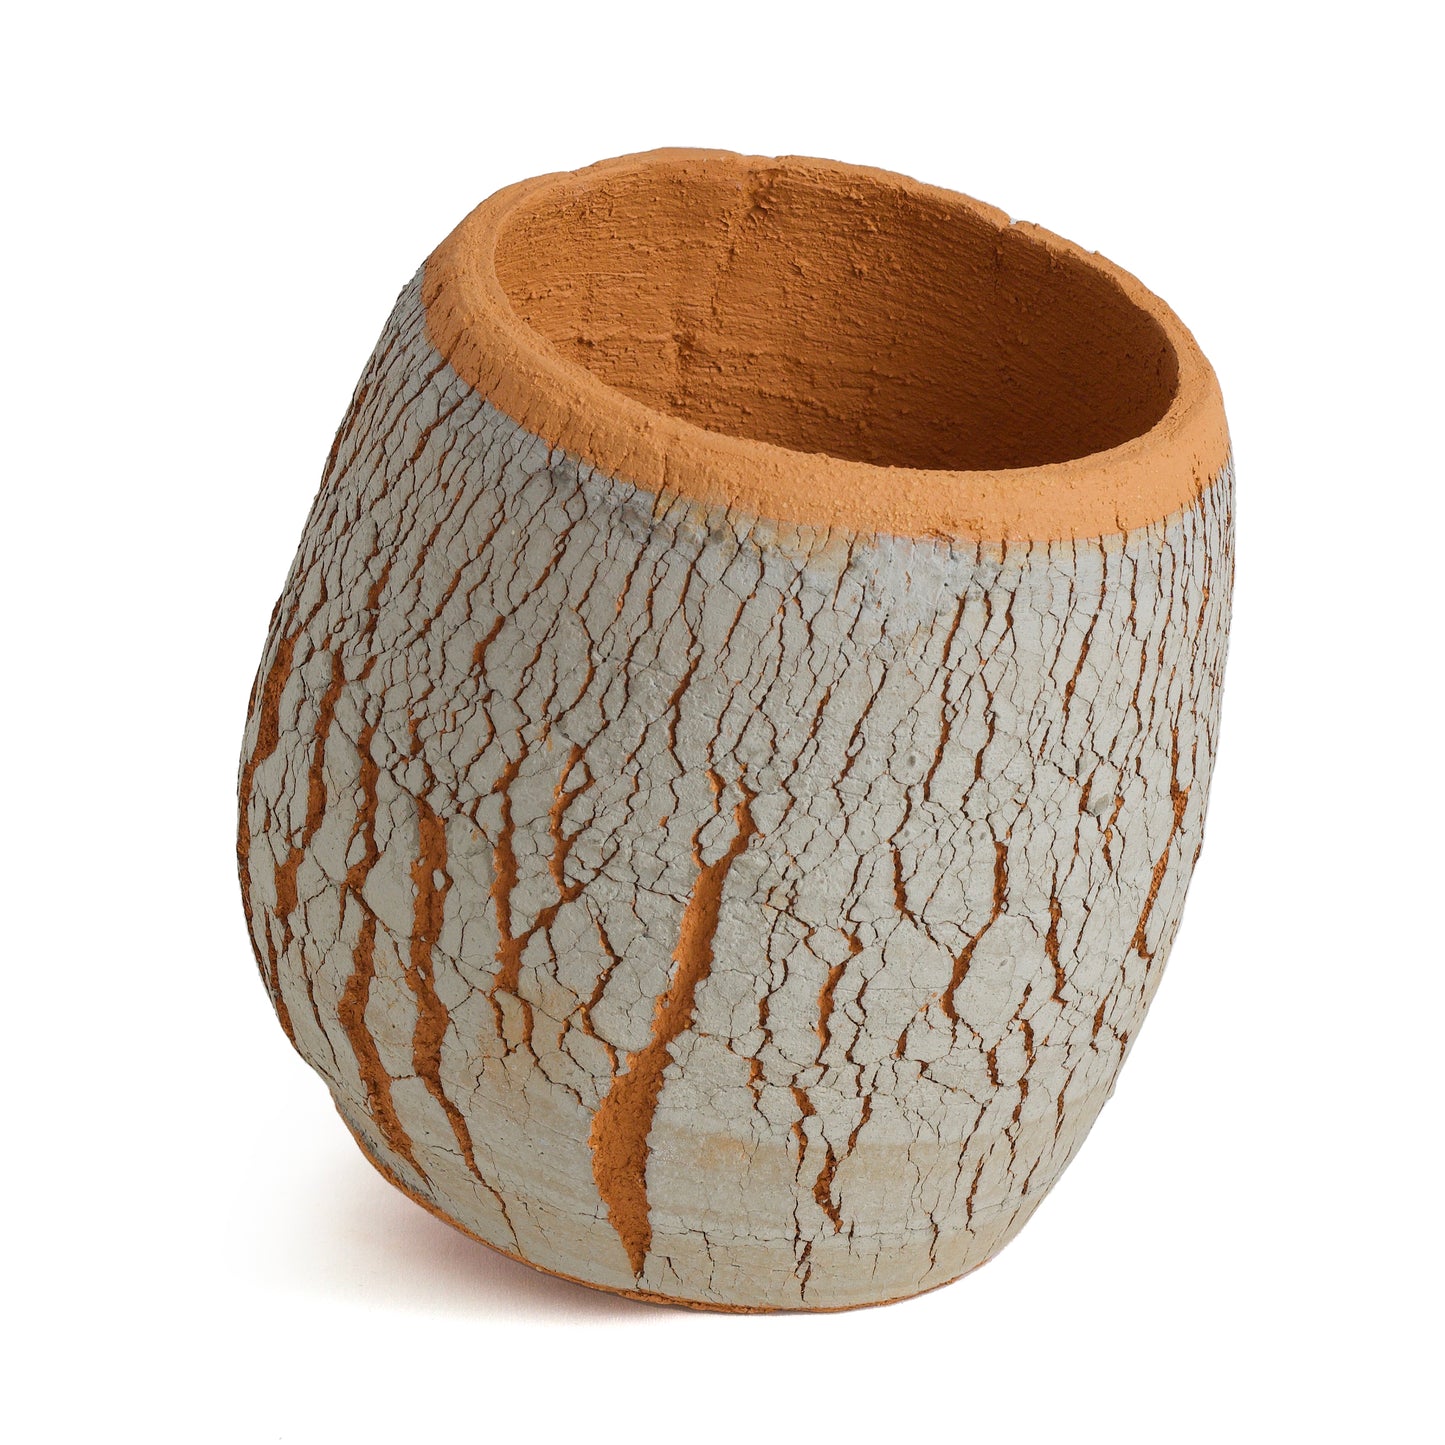 Large Arrakis Vase Cracked Ceramic Orange Grey Dune